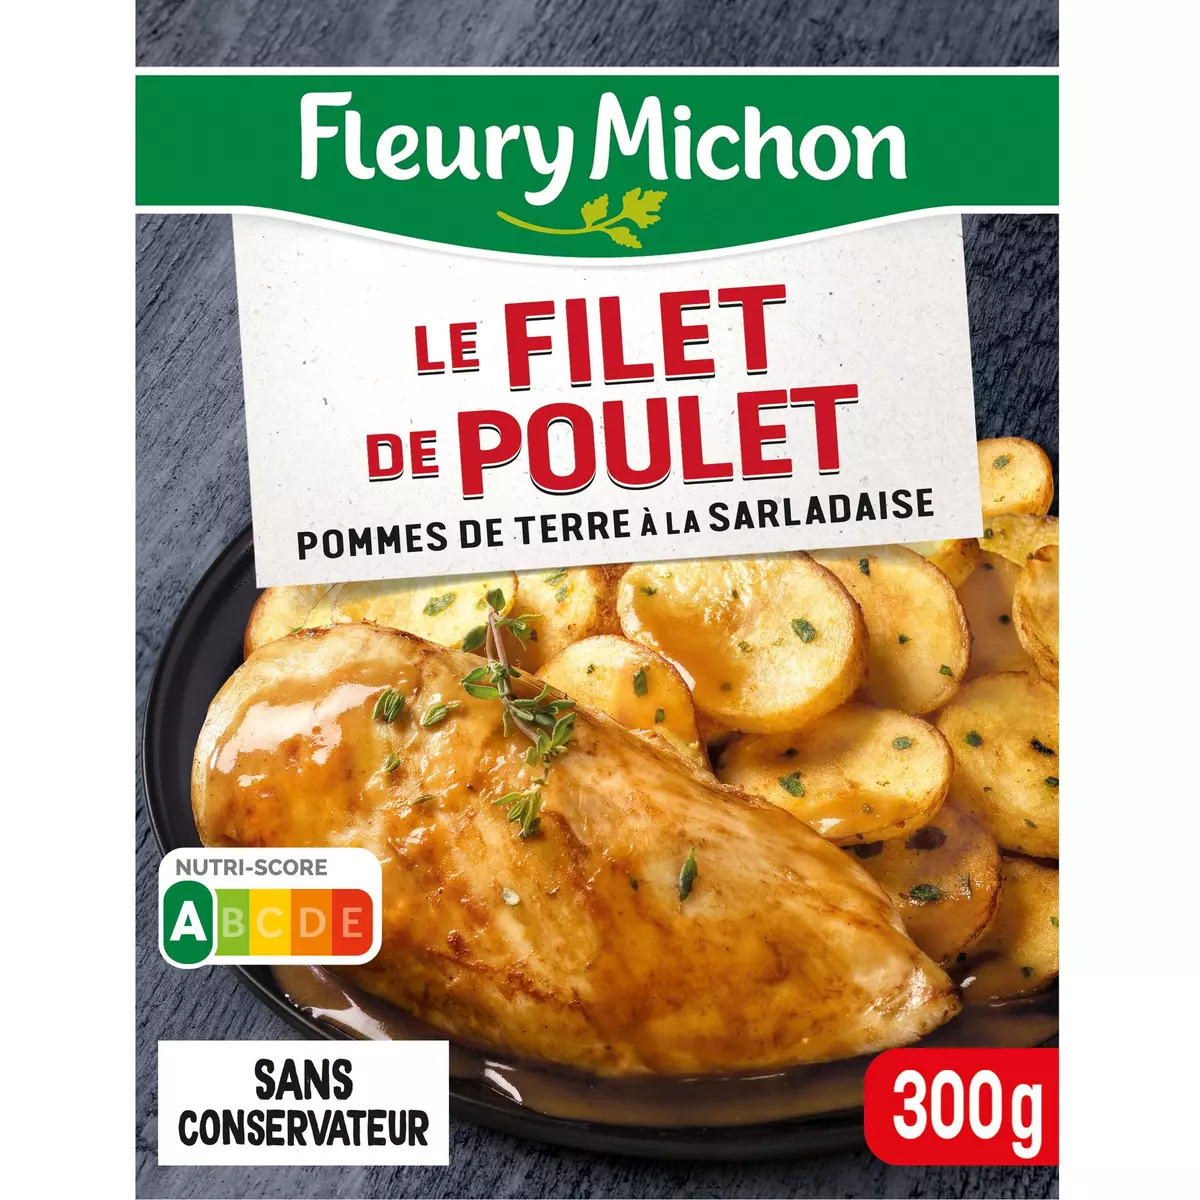 FLEURY MICHON Filet de poulet pommes de terre sarladaise 1 portion 300g